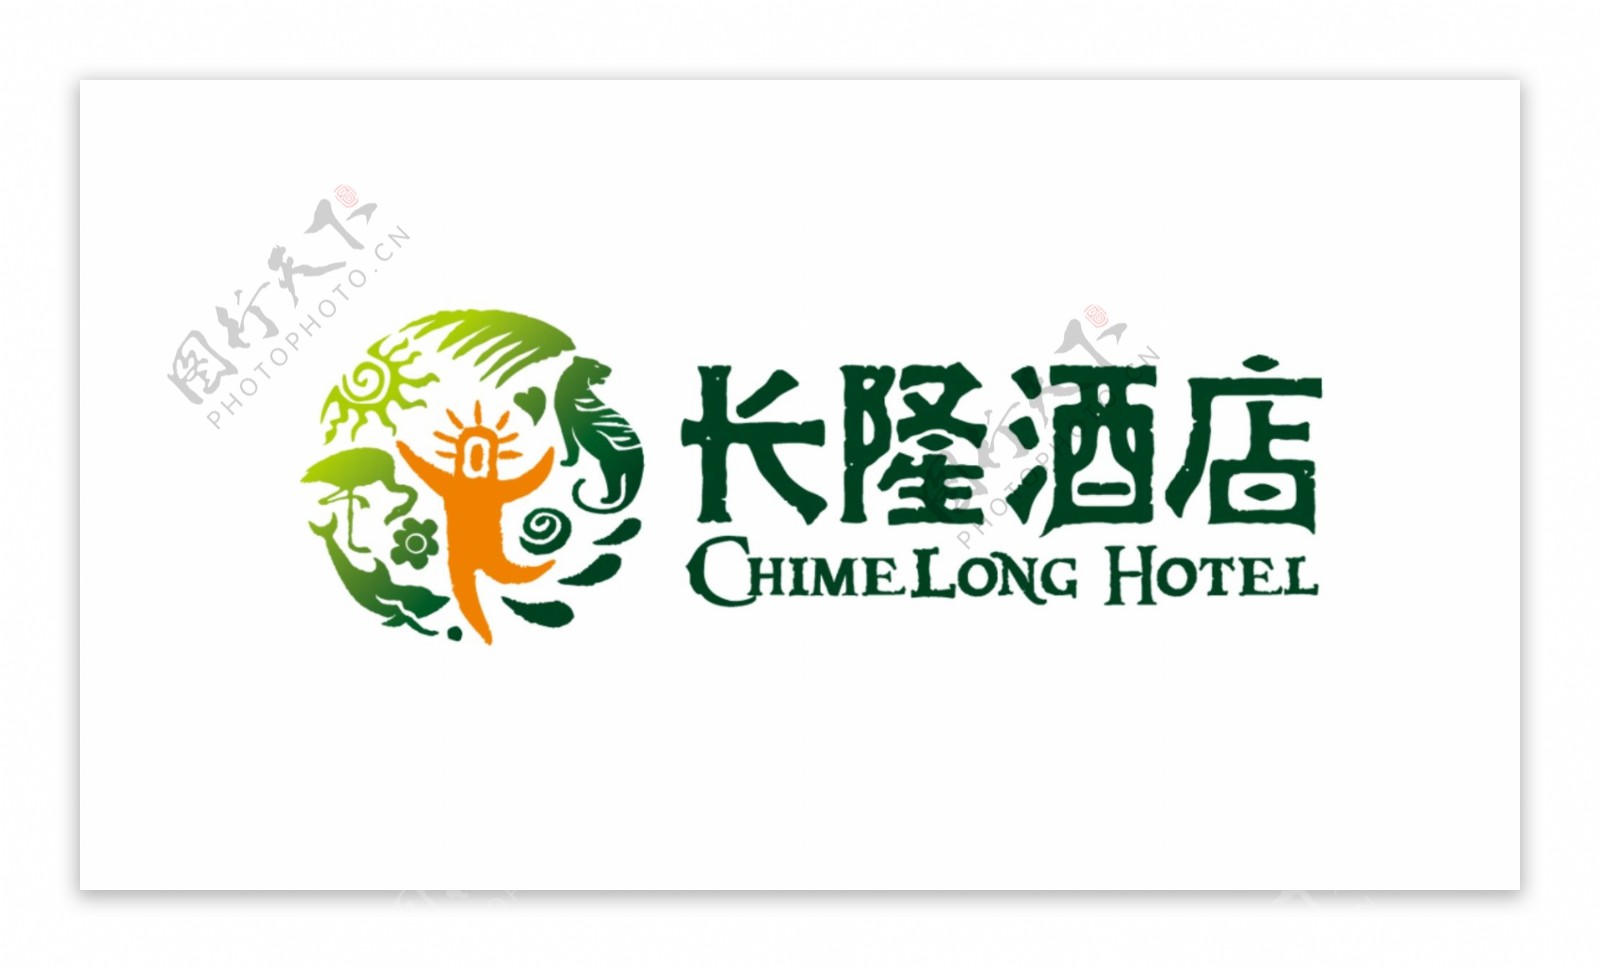 长隆酒店logo